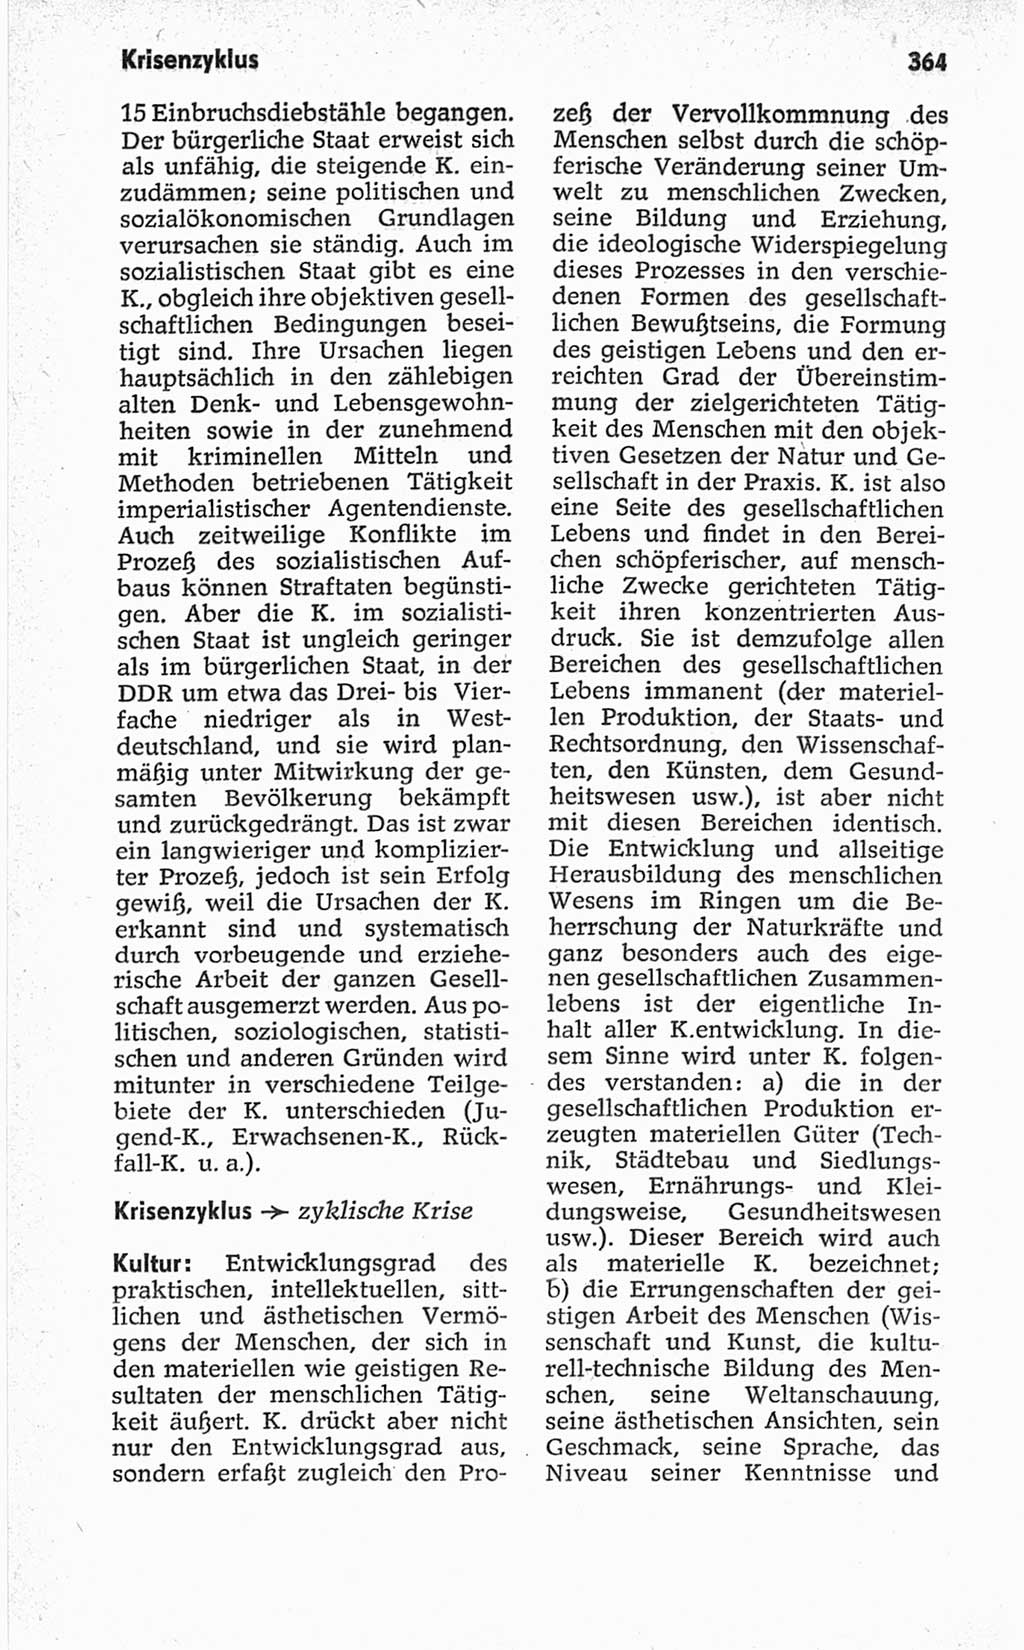 Kleines politisches Wörterbuch [Deutsche Demokratische Republik (DDR)] 1967, Seite 364 (Kl. pol. Wb. DDR 1967, S. 364)